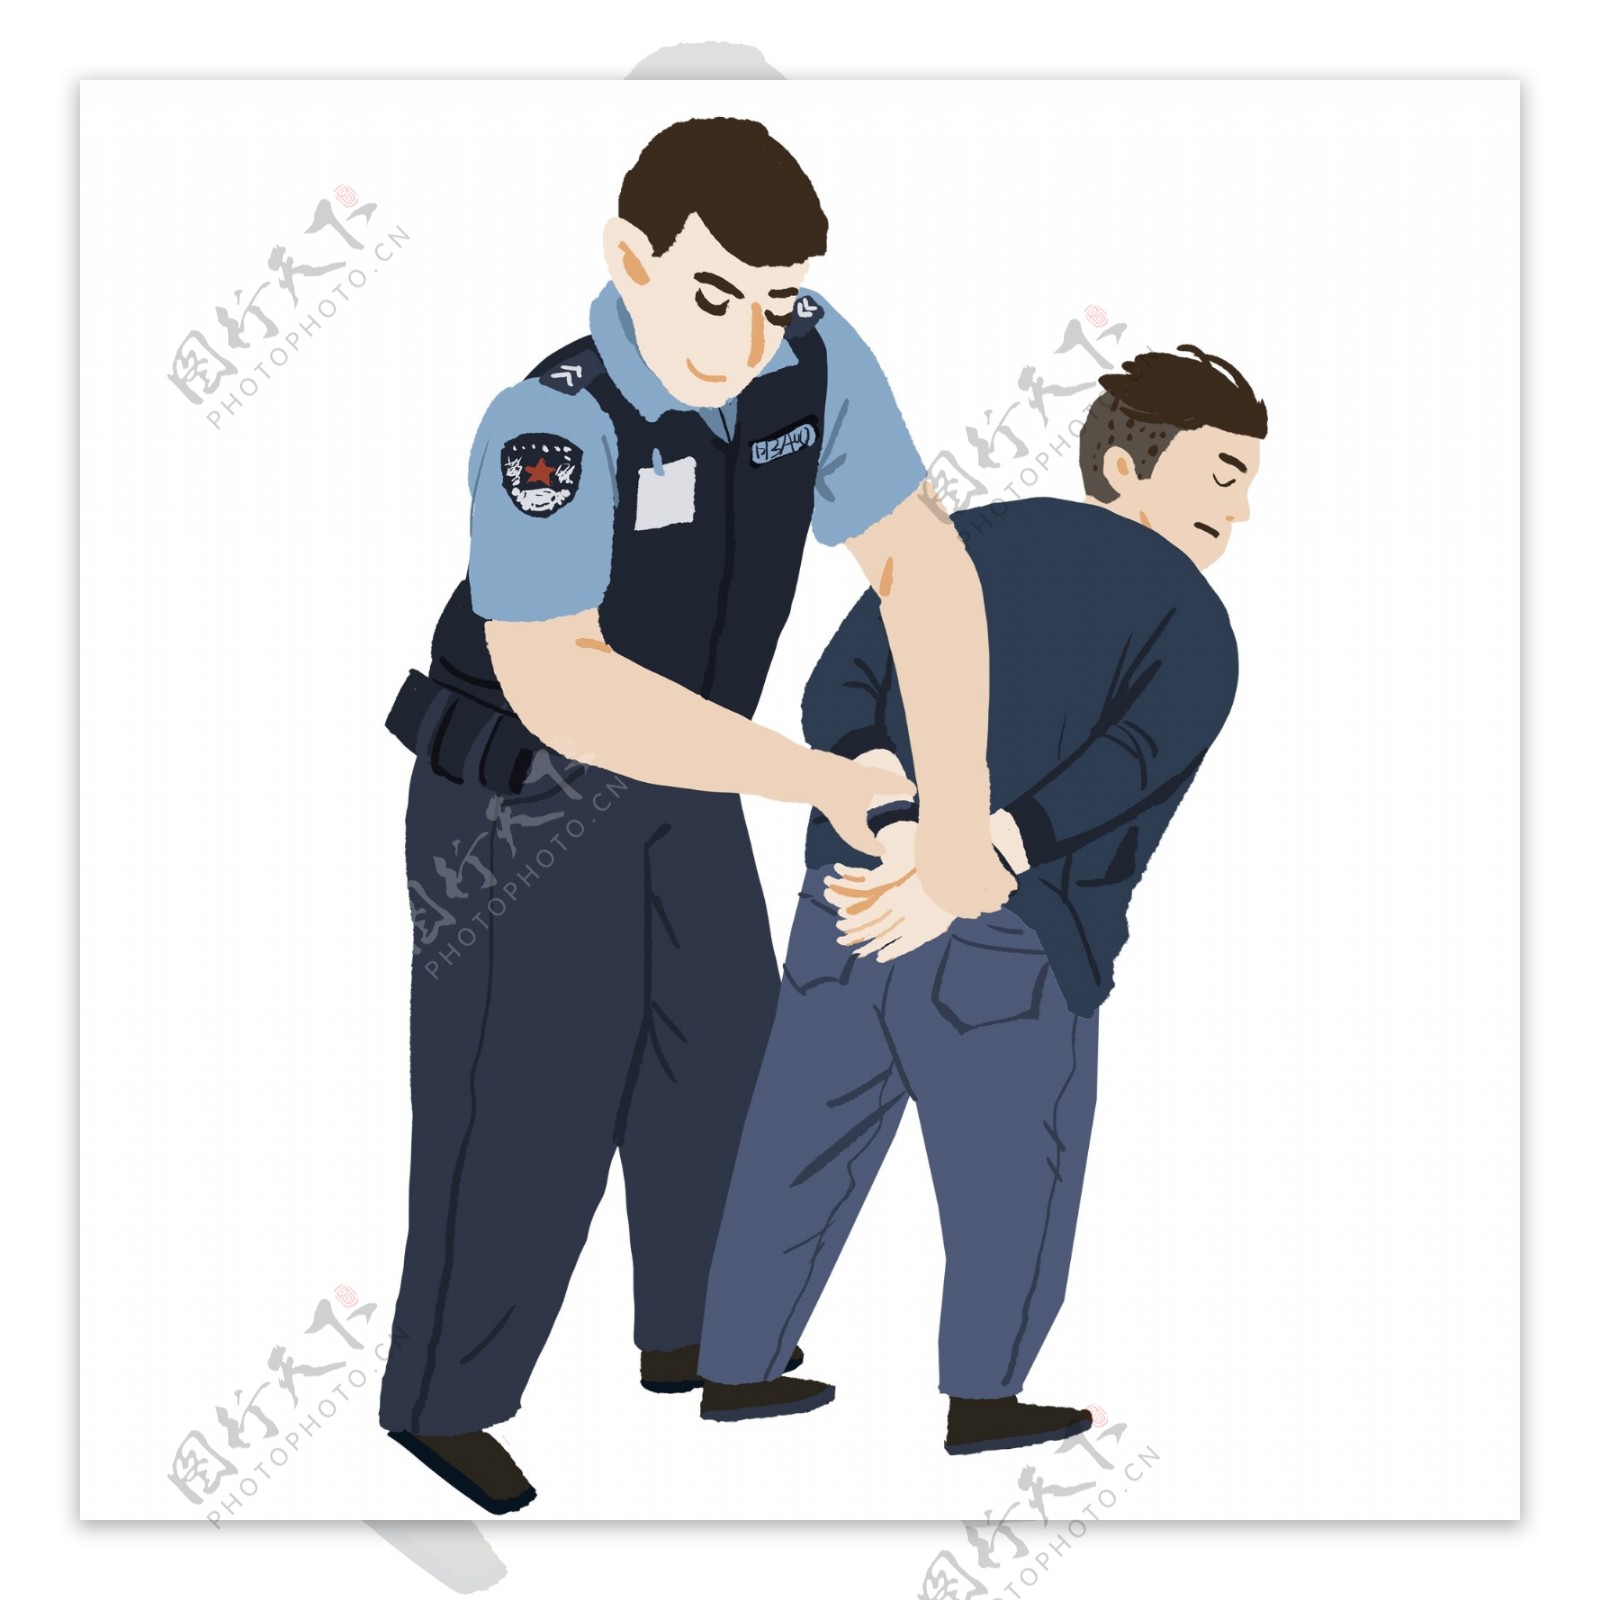 抓捕犯人的警察卡通人物设计